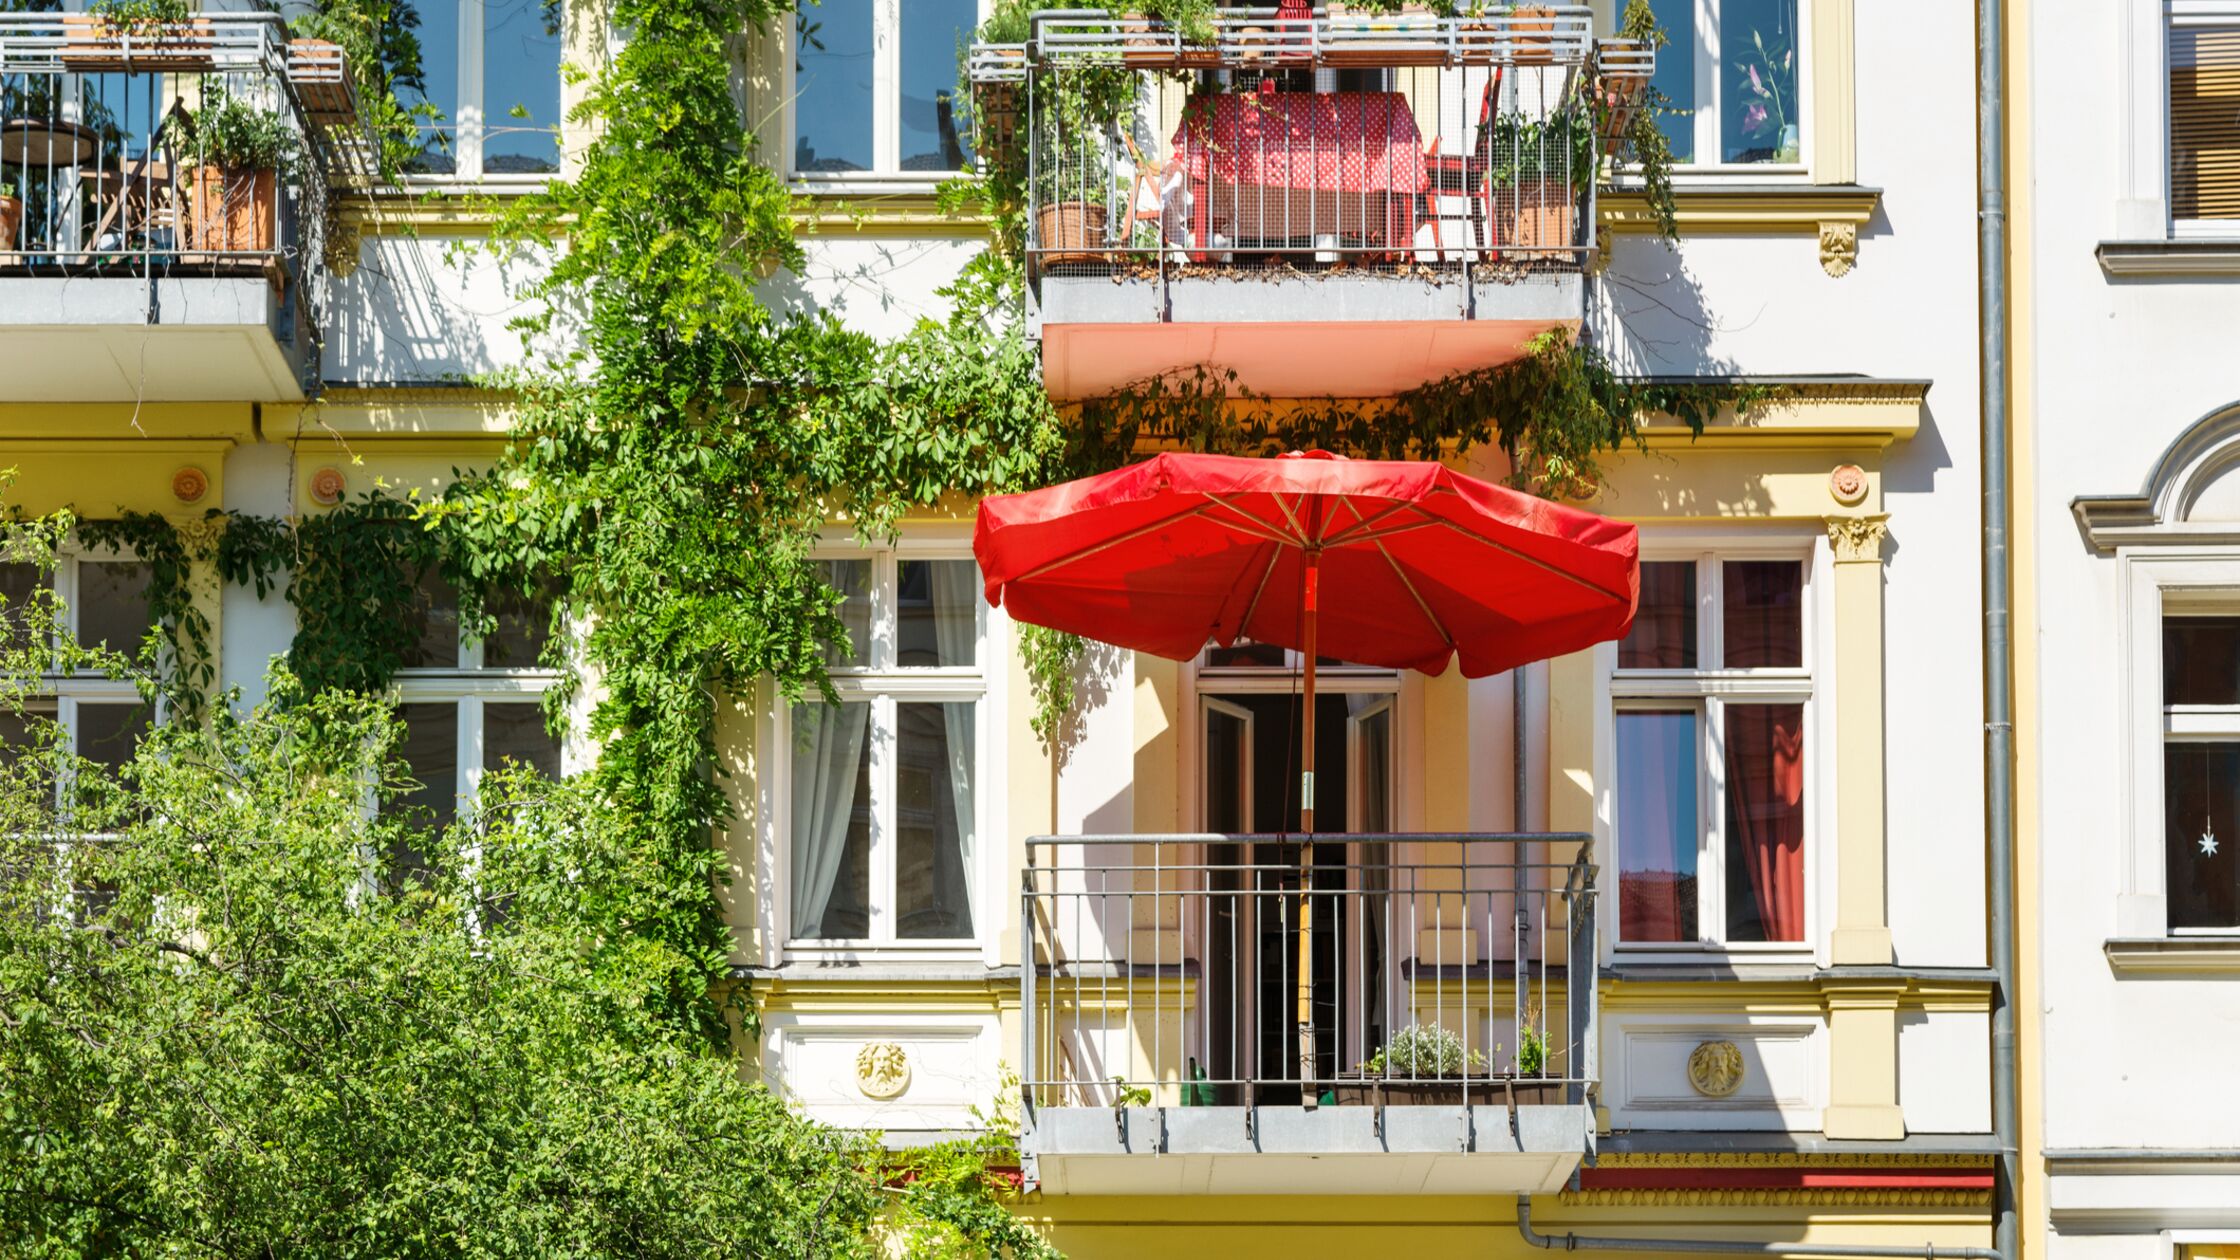 Außenansicht eines größeren Mietshauses mit bepflanzten Balkons und Sonnenschirm